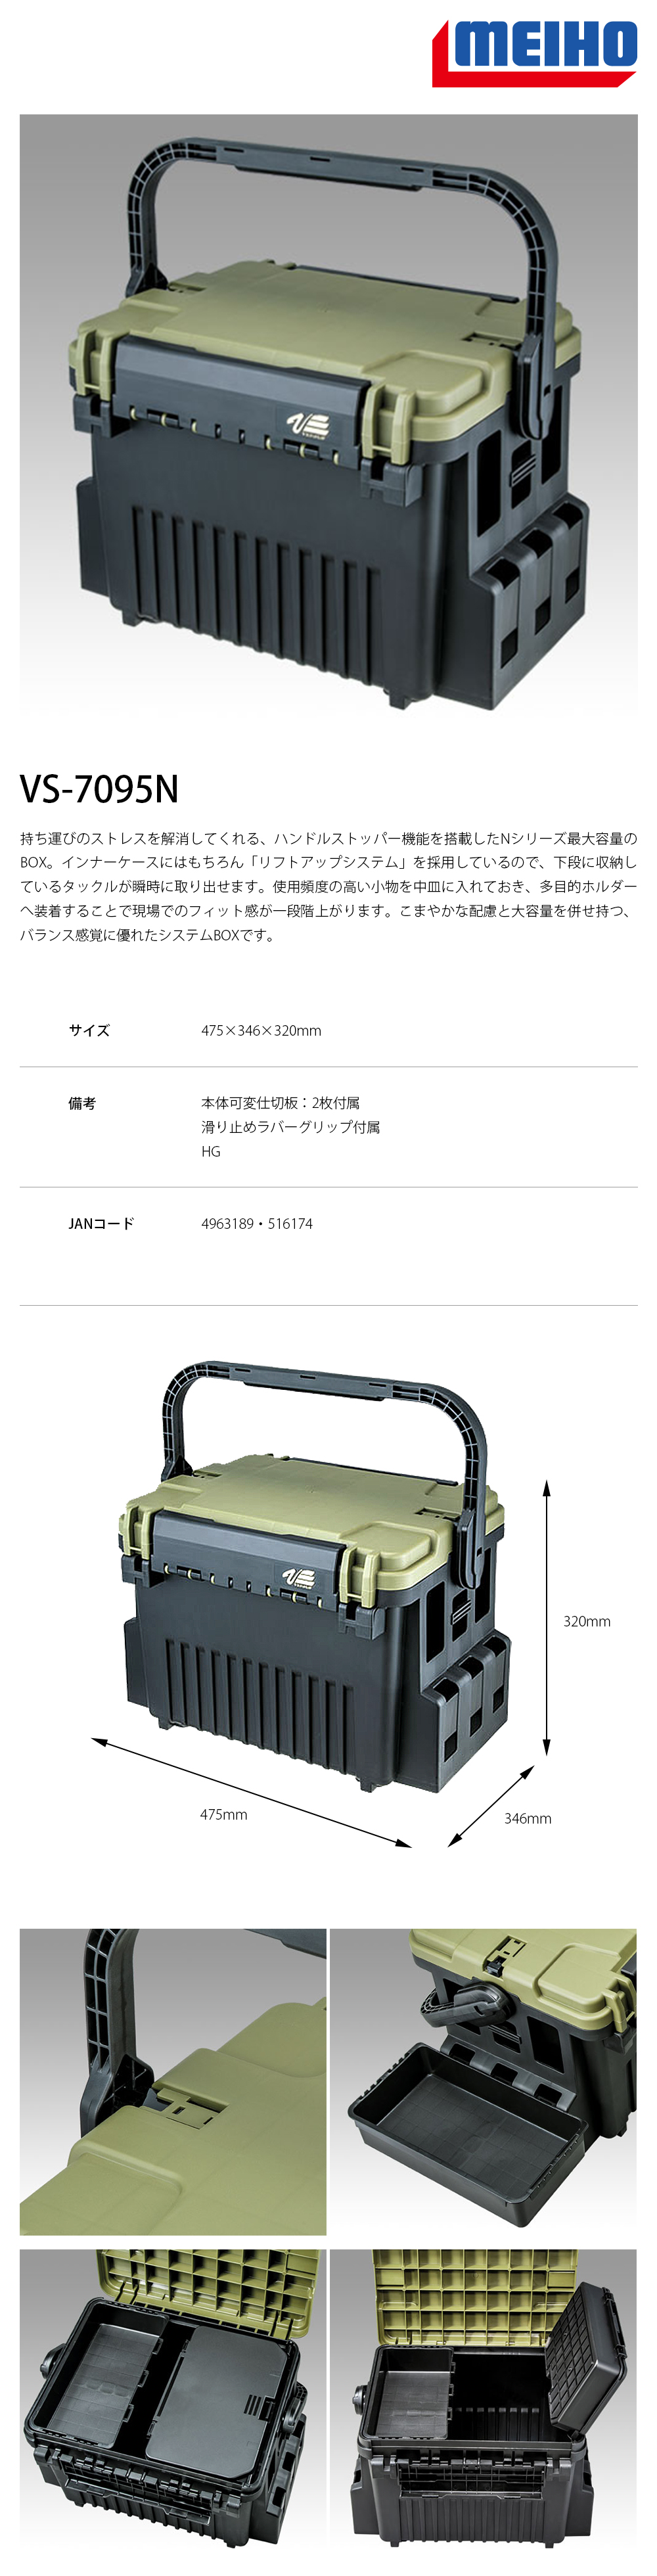 明邦VS-7095N 橄欖綠[工具箱] - 漁拓釣具官方線上購物平台